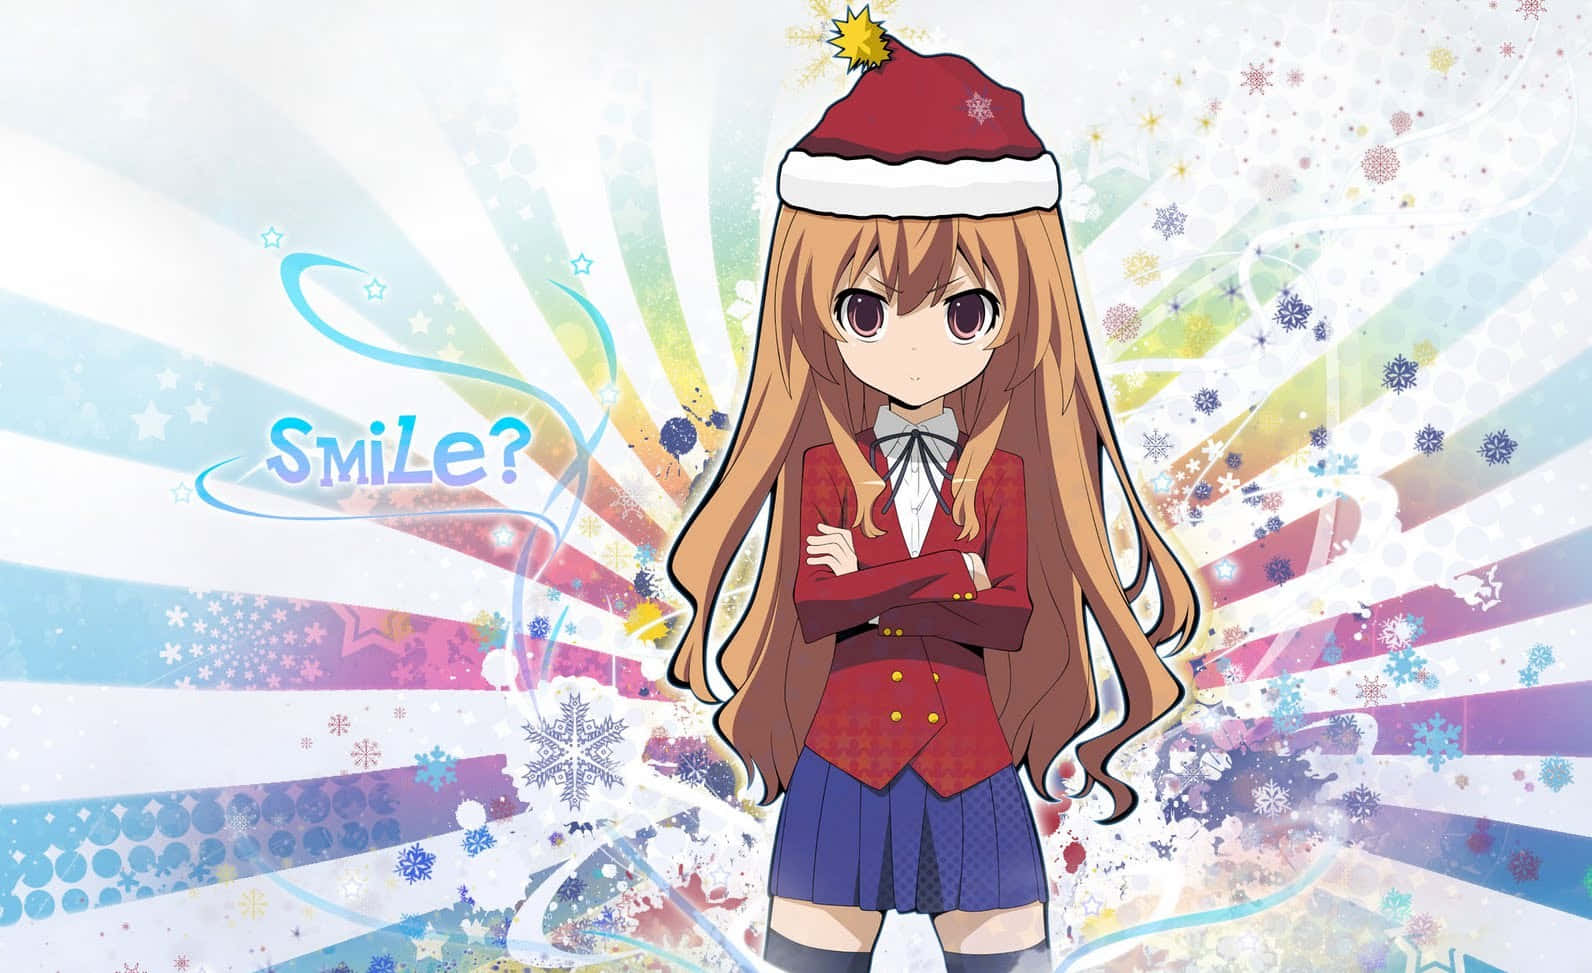 Espalheo Espírito Natalino Com Esta Cena Festiva De Anime De Natal!